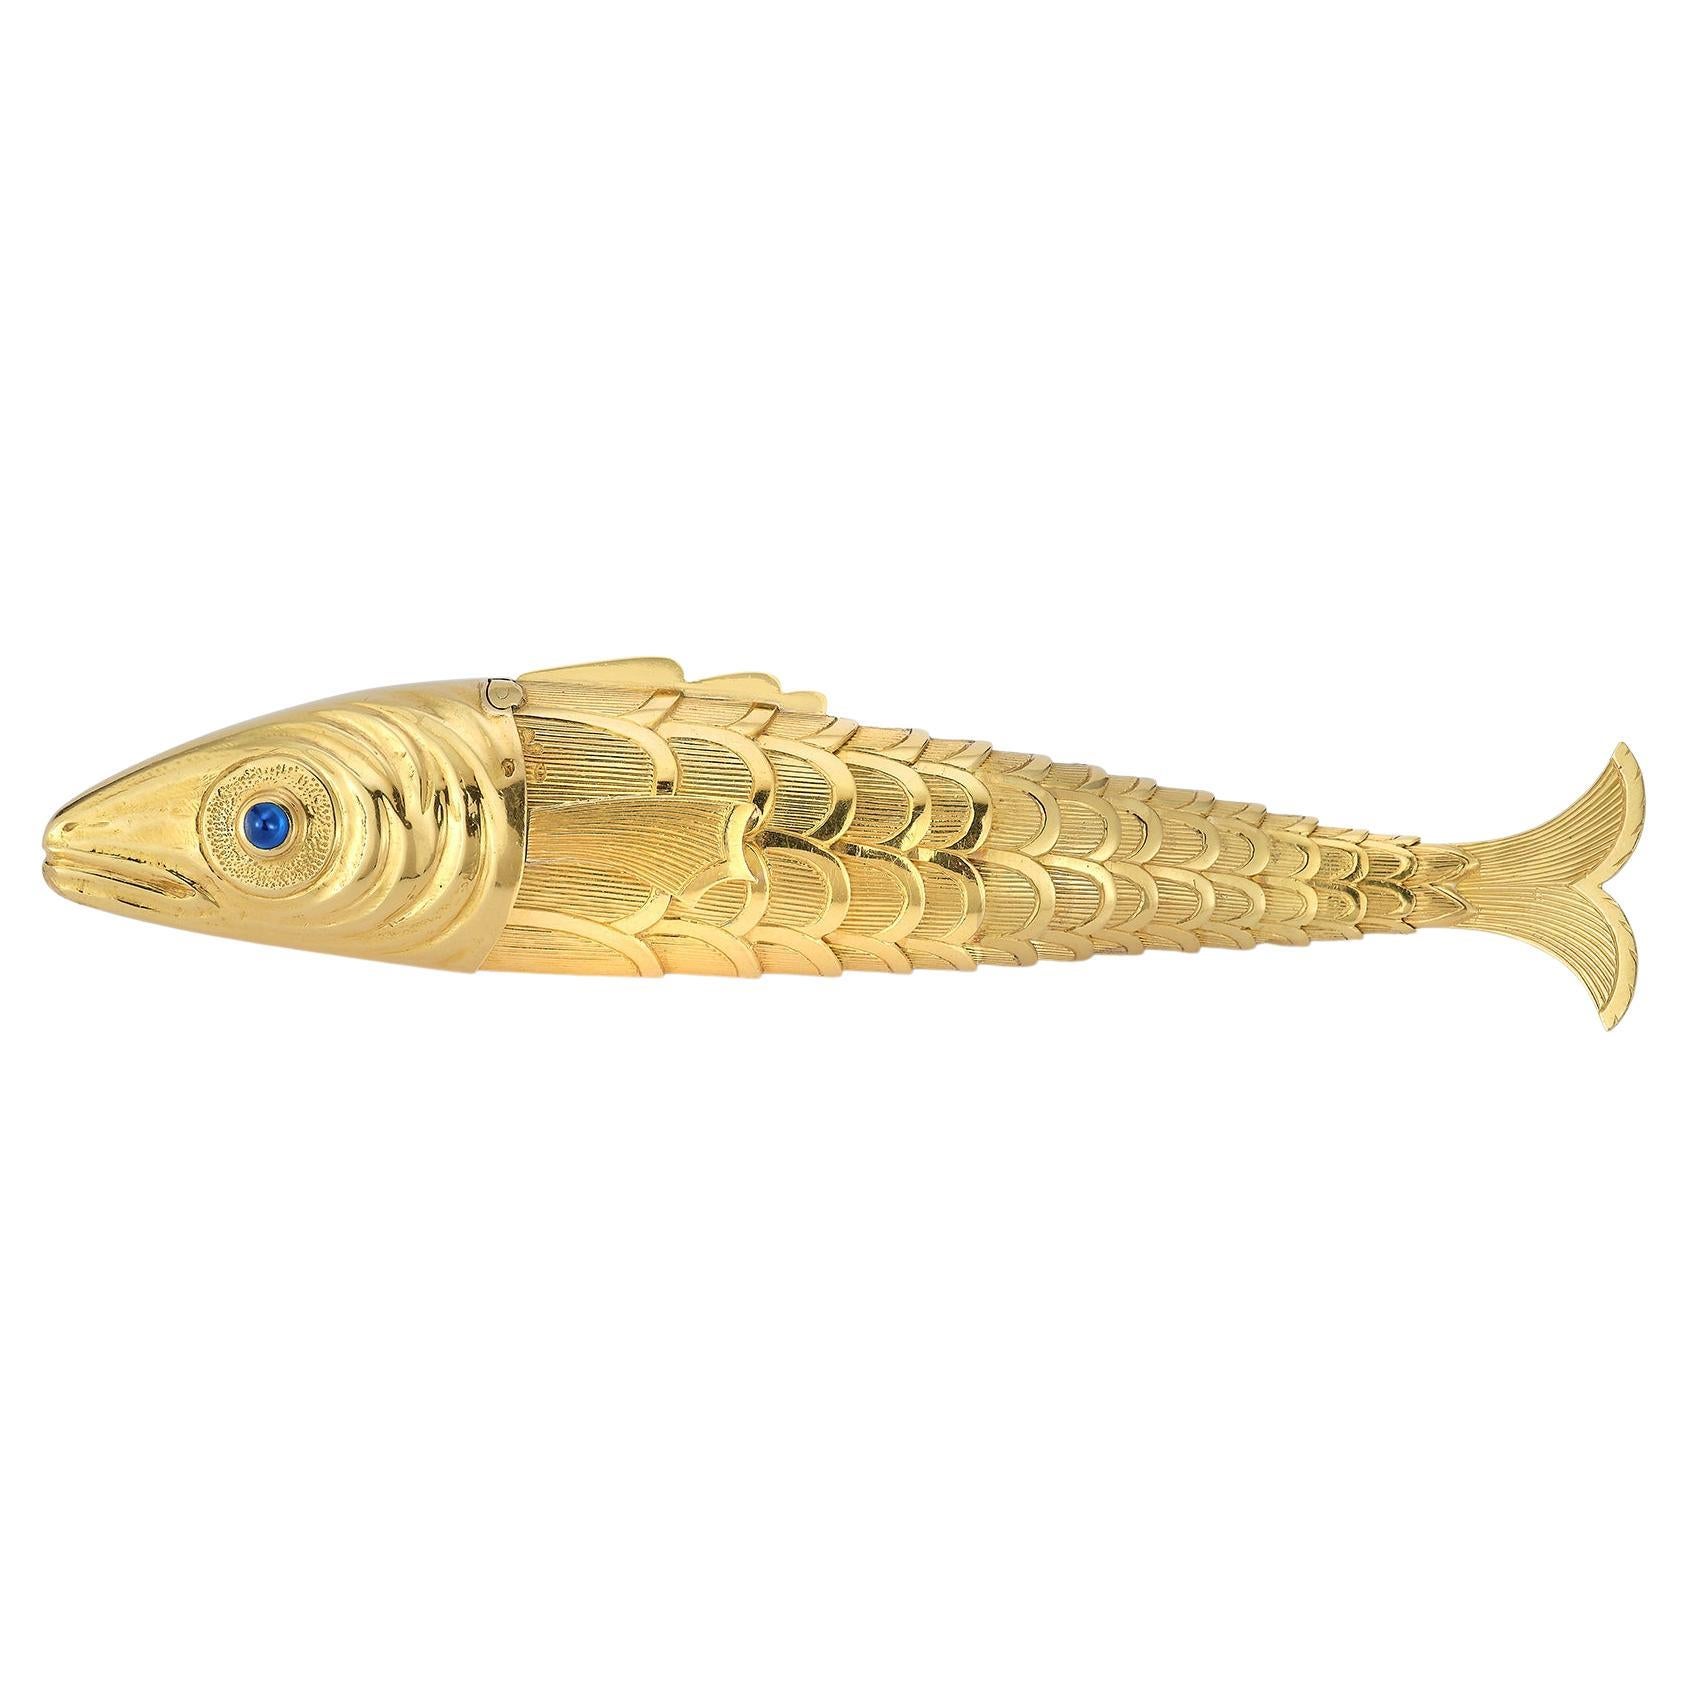 Schlumberger Goldfisch-Feuerzeug
Hergestellt ca. 1939.  
Ein beweglicher Goldfisch mit strukturierten Goldschuppen, besetzt mit einem Cabochon-Saphir und einem Rubin als Augen,
18k Gelbgold. 
Der Kopf, der sich aufklappen lässt, um einen